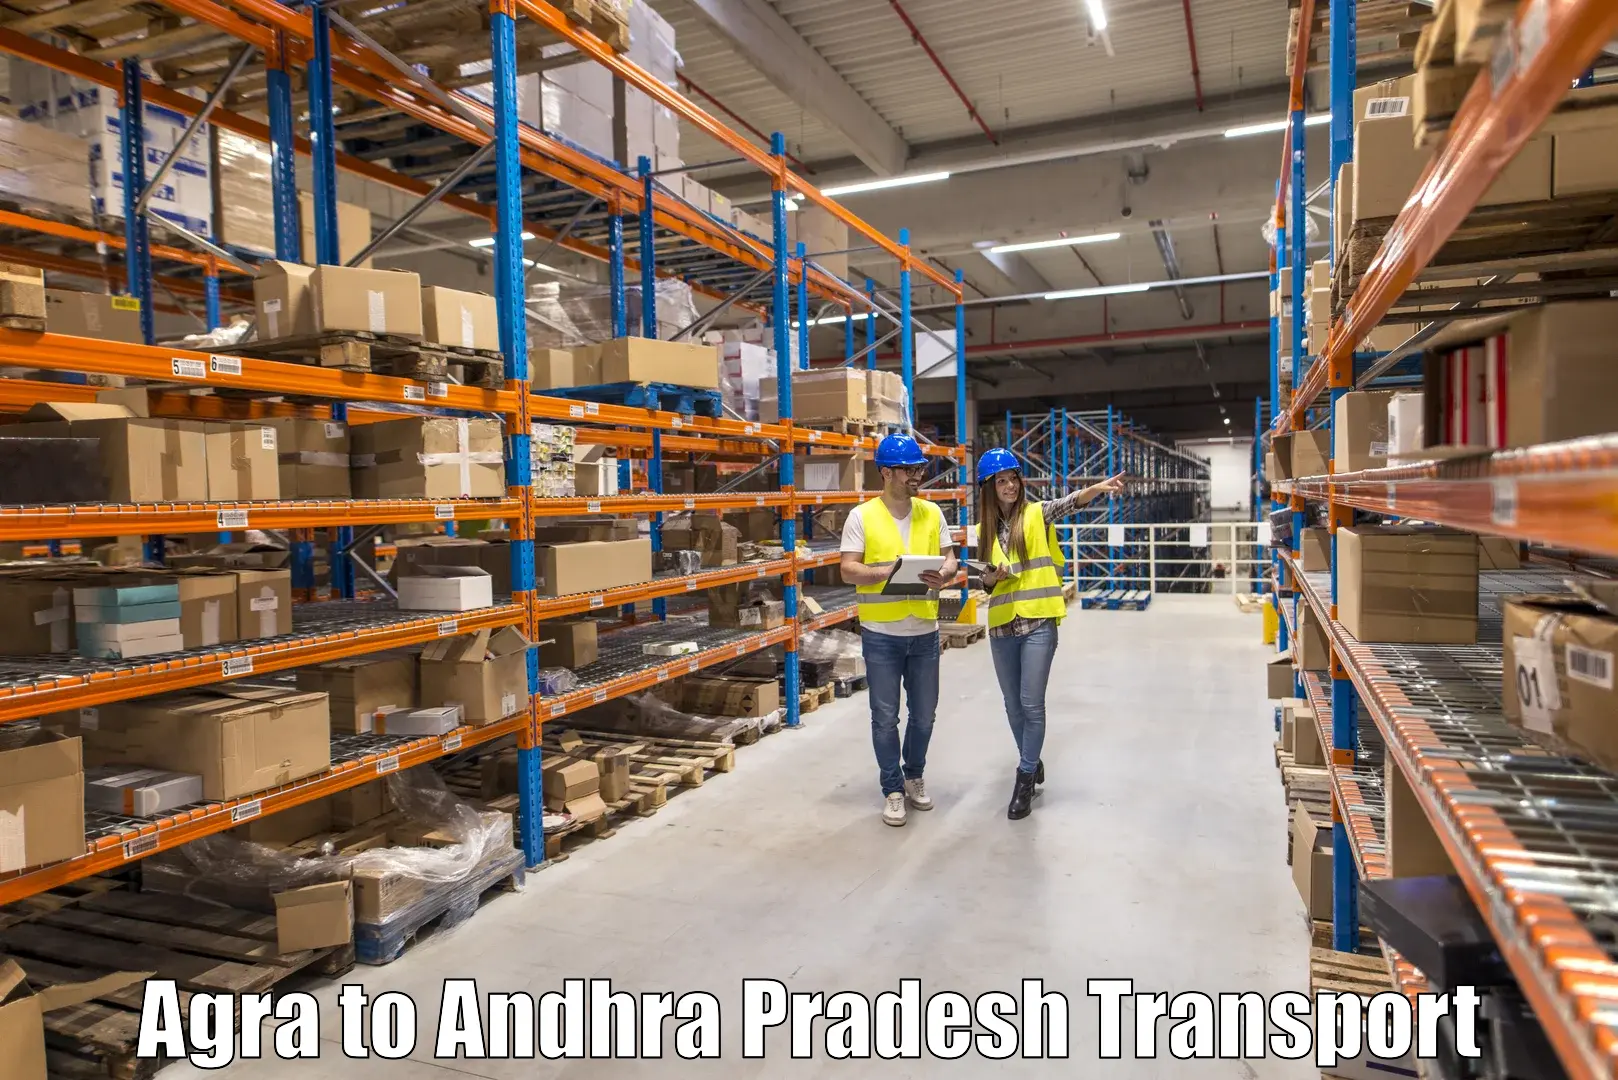 Online transport service Agra to Ichchapuram